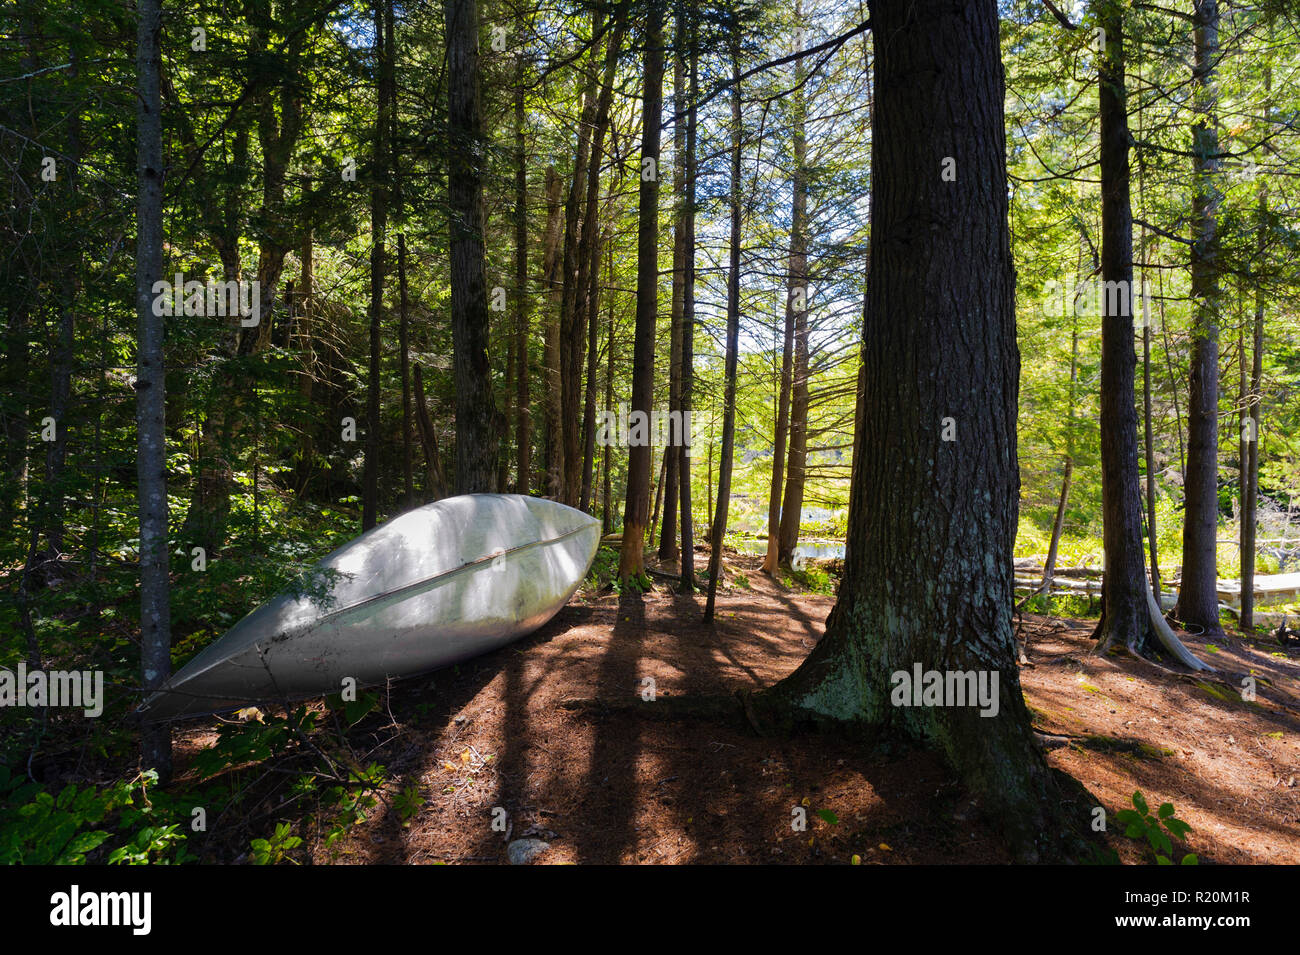 Kanu gespeichert, im Wald, in der Nähe von einem See in den Adirondacks Region, Staat New York, USA. Stockfoto